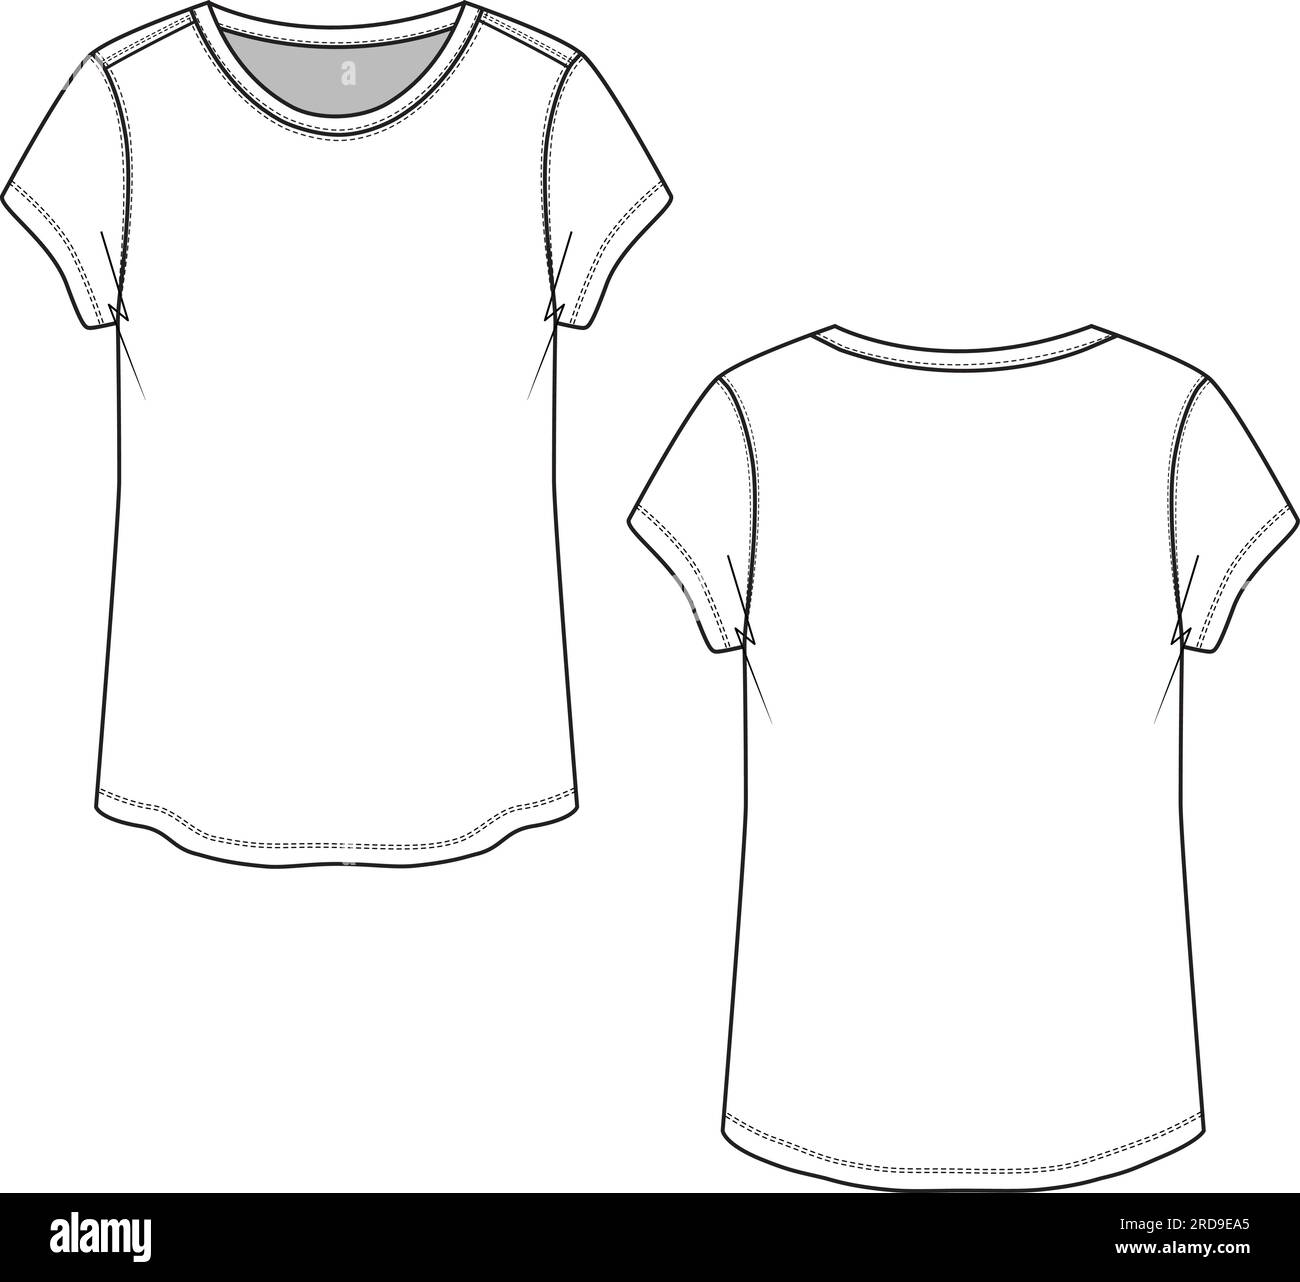 Frauen Rundhalsausschnitt Kurzarm-T-Shirt technische flache Zeichnung Vektor Stock Vektor